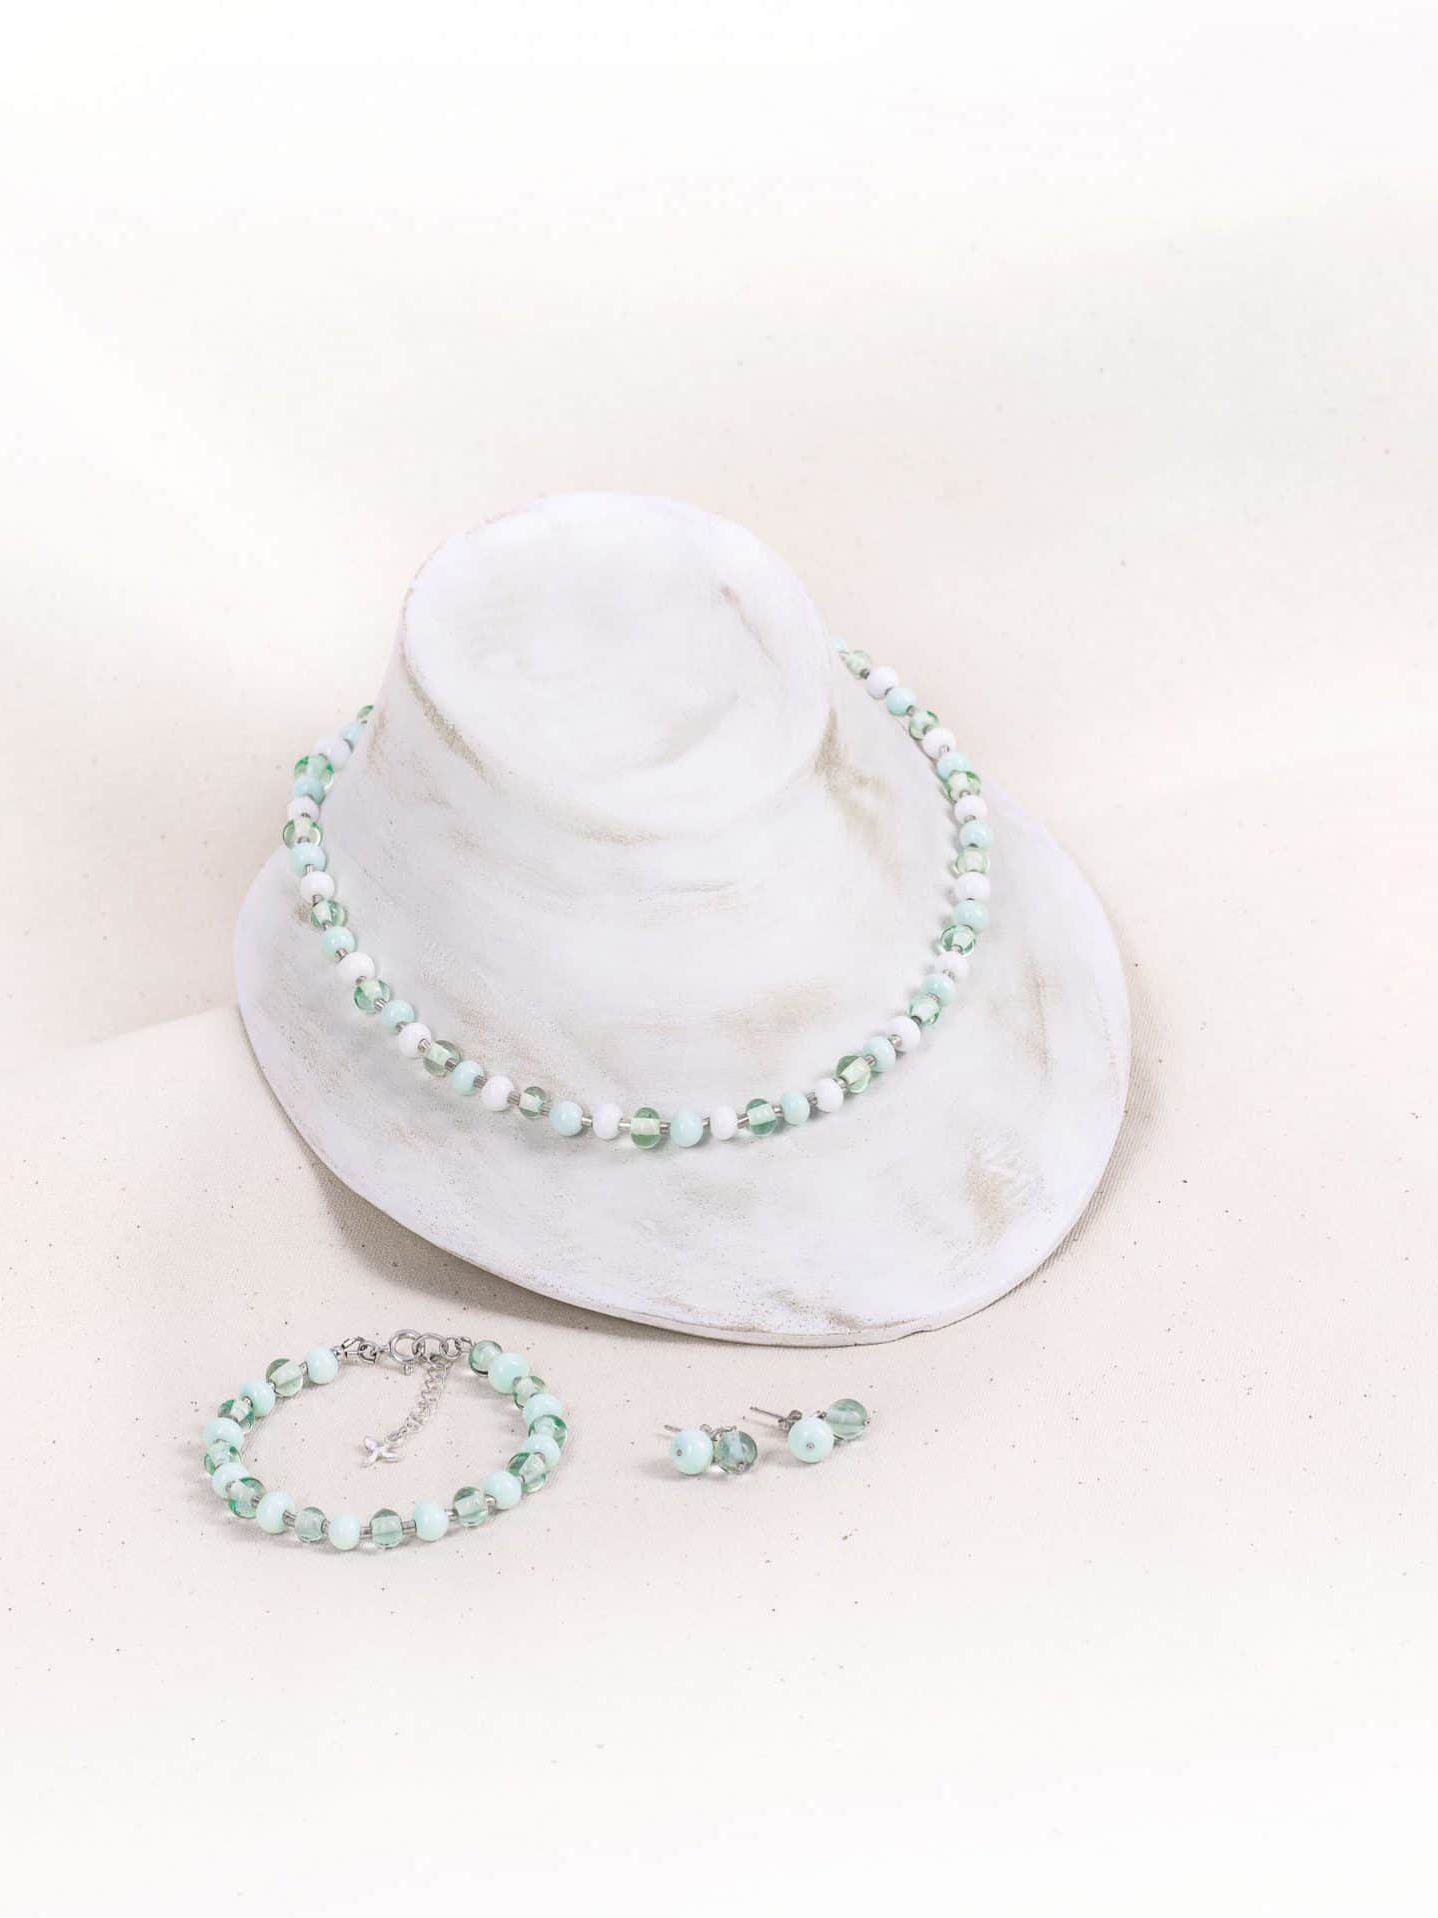 SAROCCA Glas Schmuck individuell nachhaltig Set Armband Halskette Ohrring grün Silber